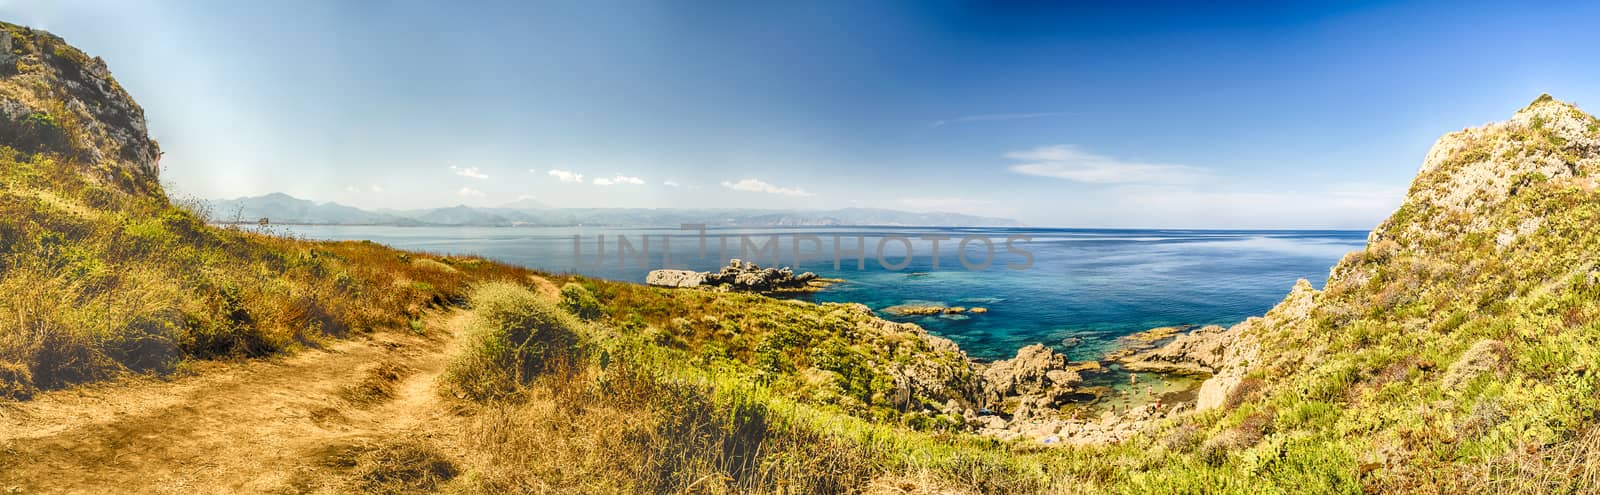 Panoramic View over Milazzo Beach, Sicily by marcorubino